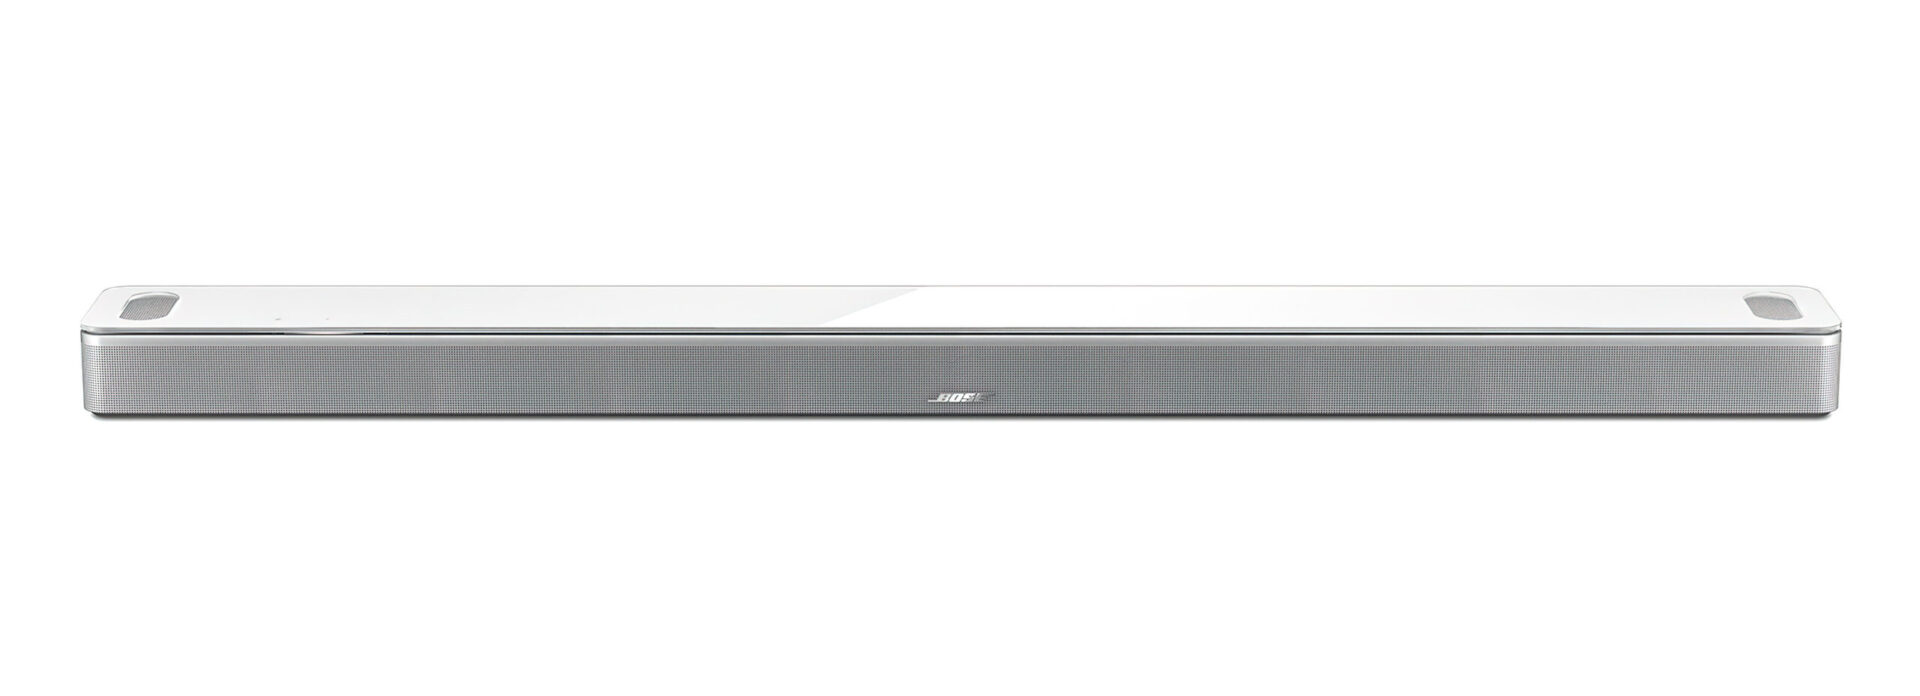 Bose Smart Soundbar 900 White scaled 1